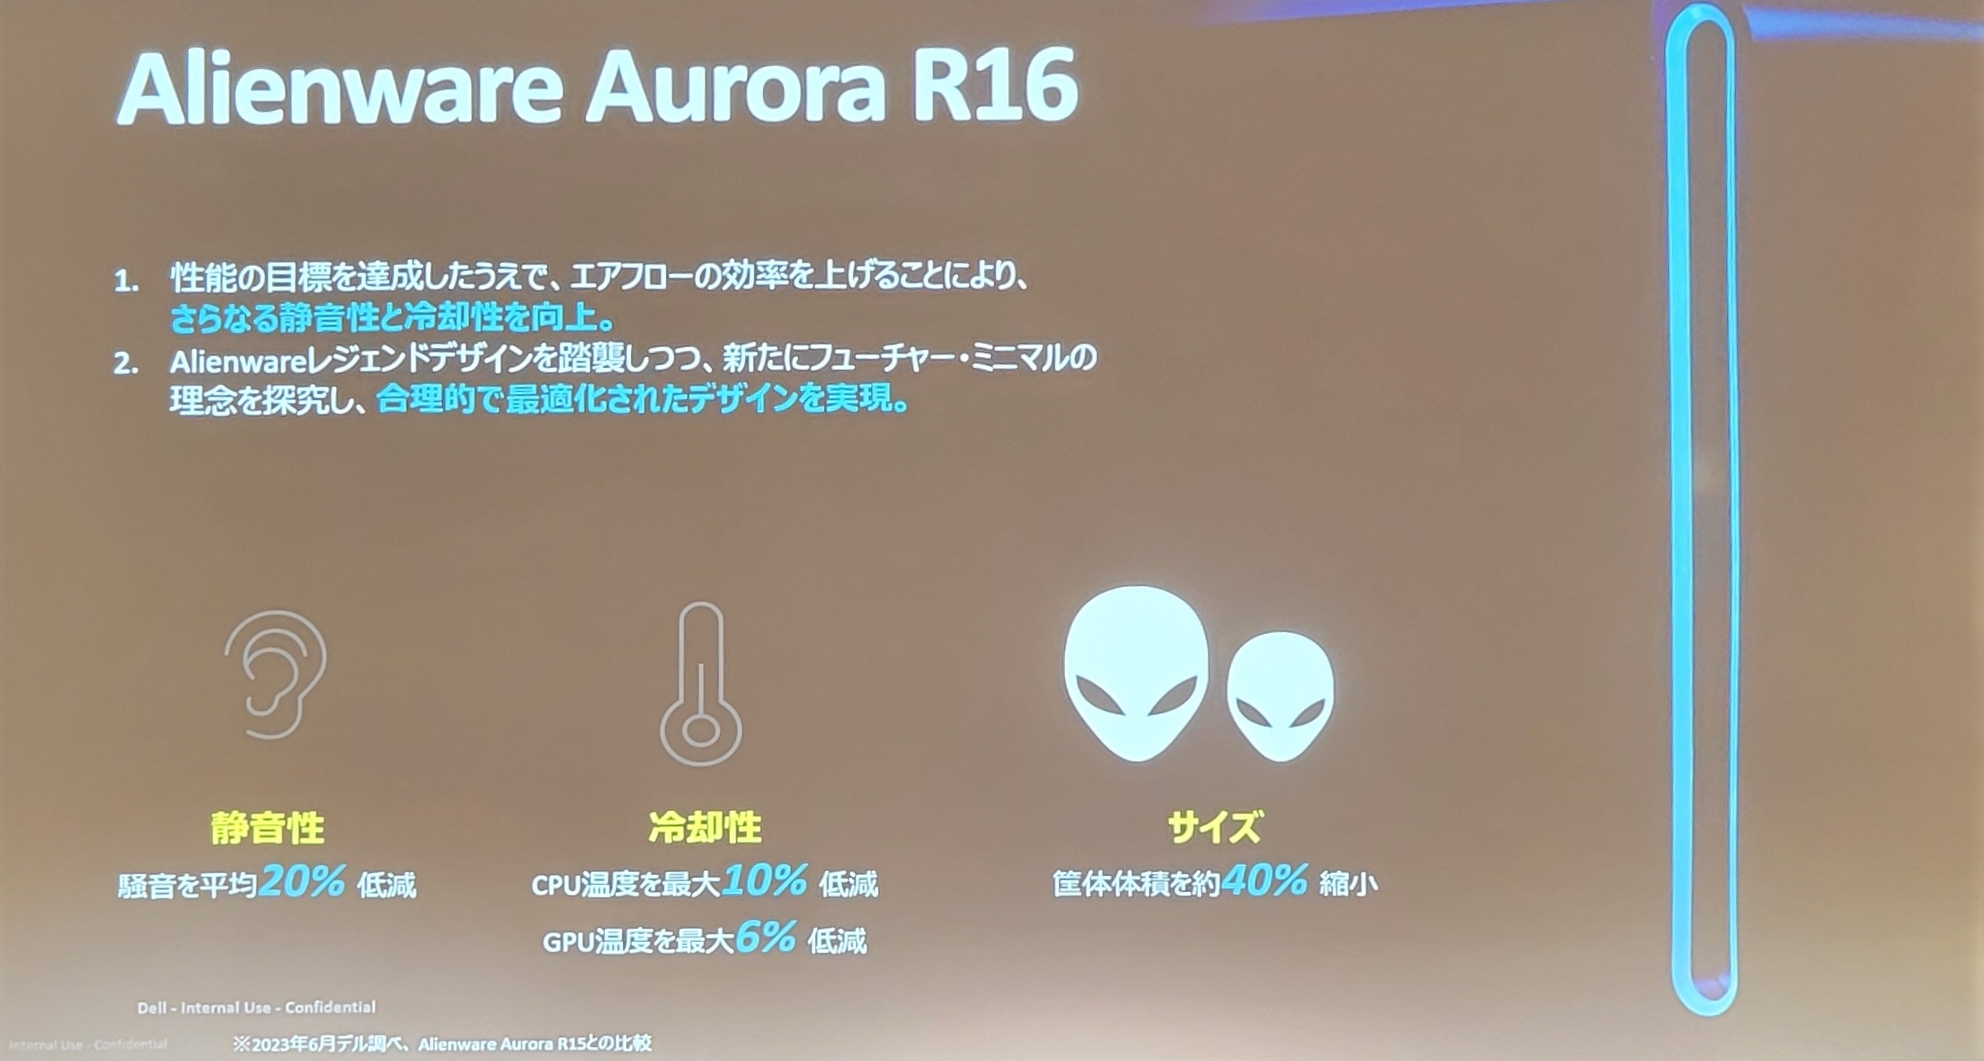 Alienware Aurora R16の説明画像